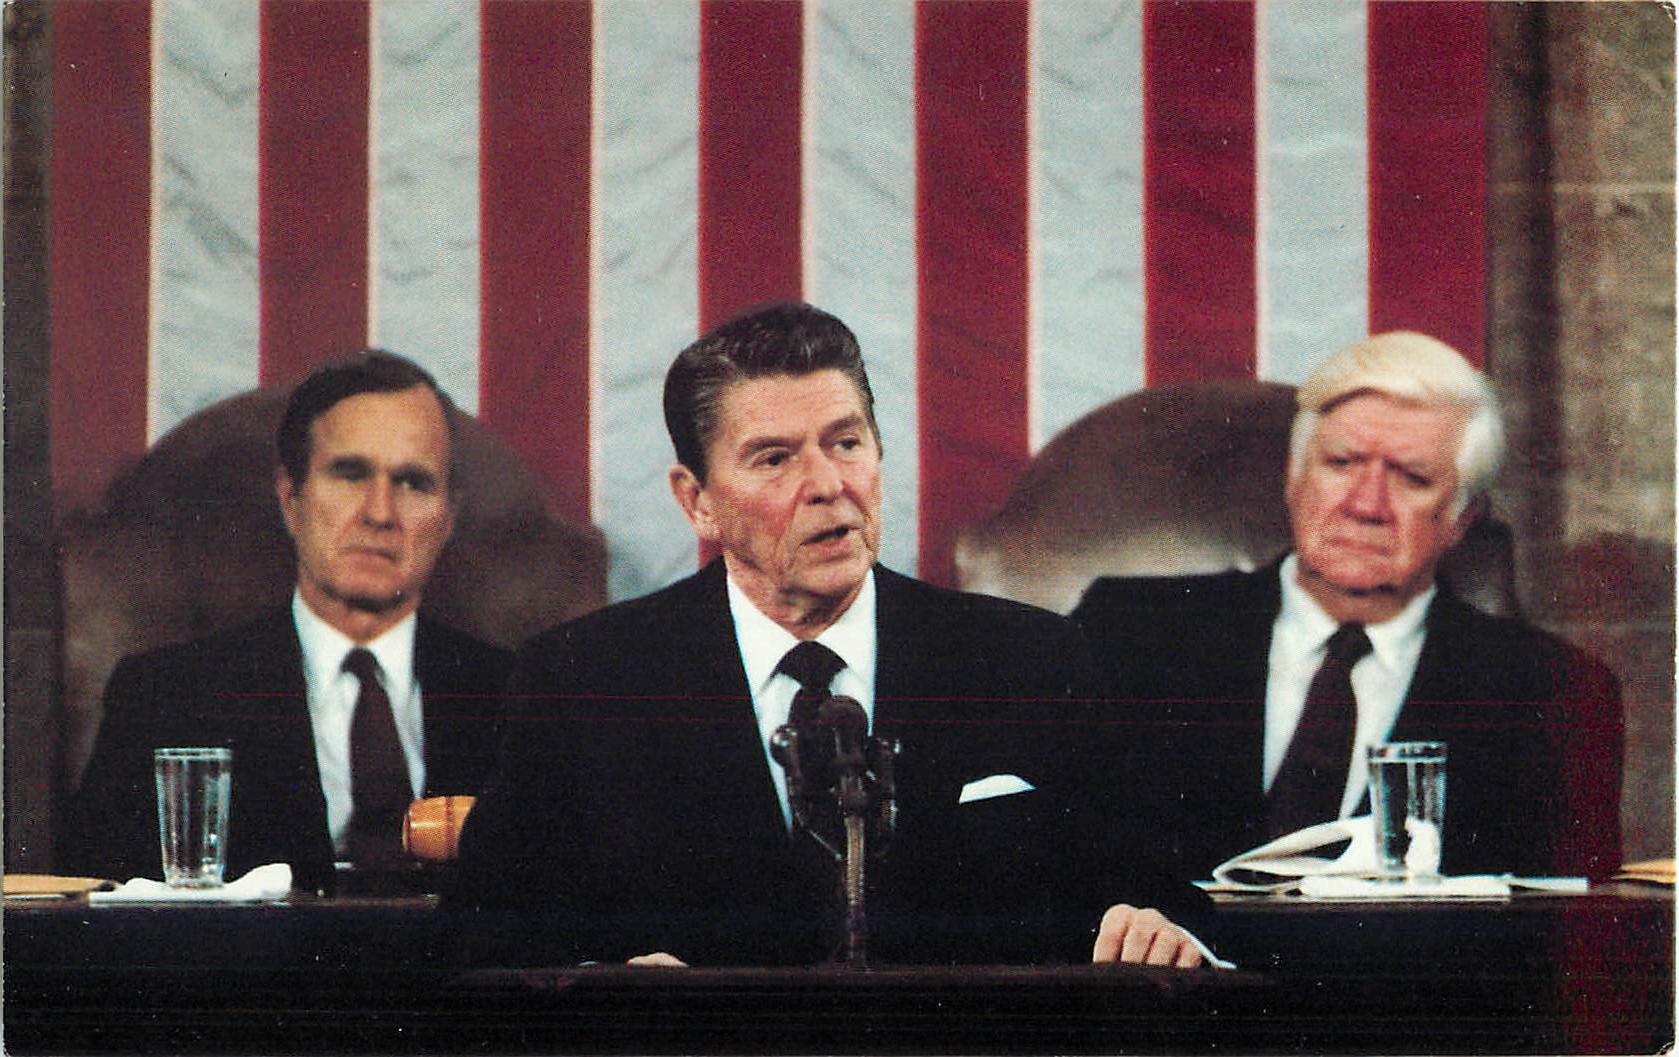 President Reagan, Vice President Bush, and House Speaker